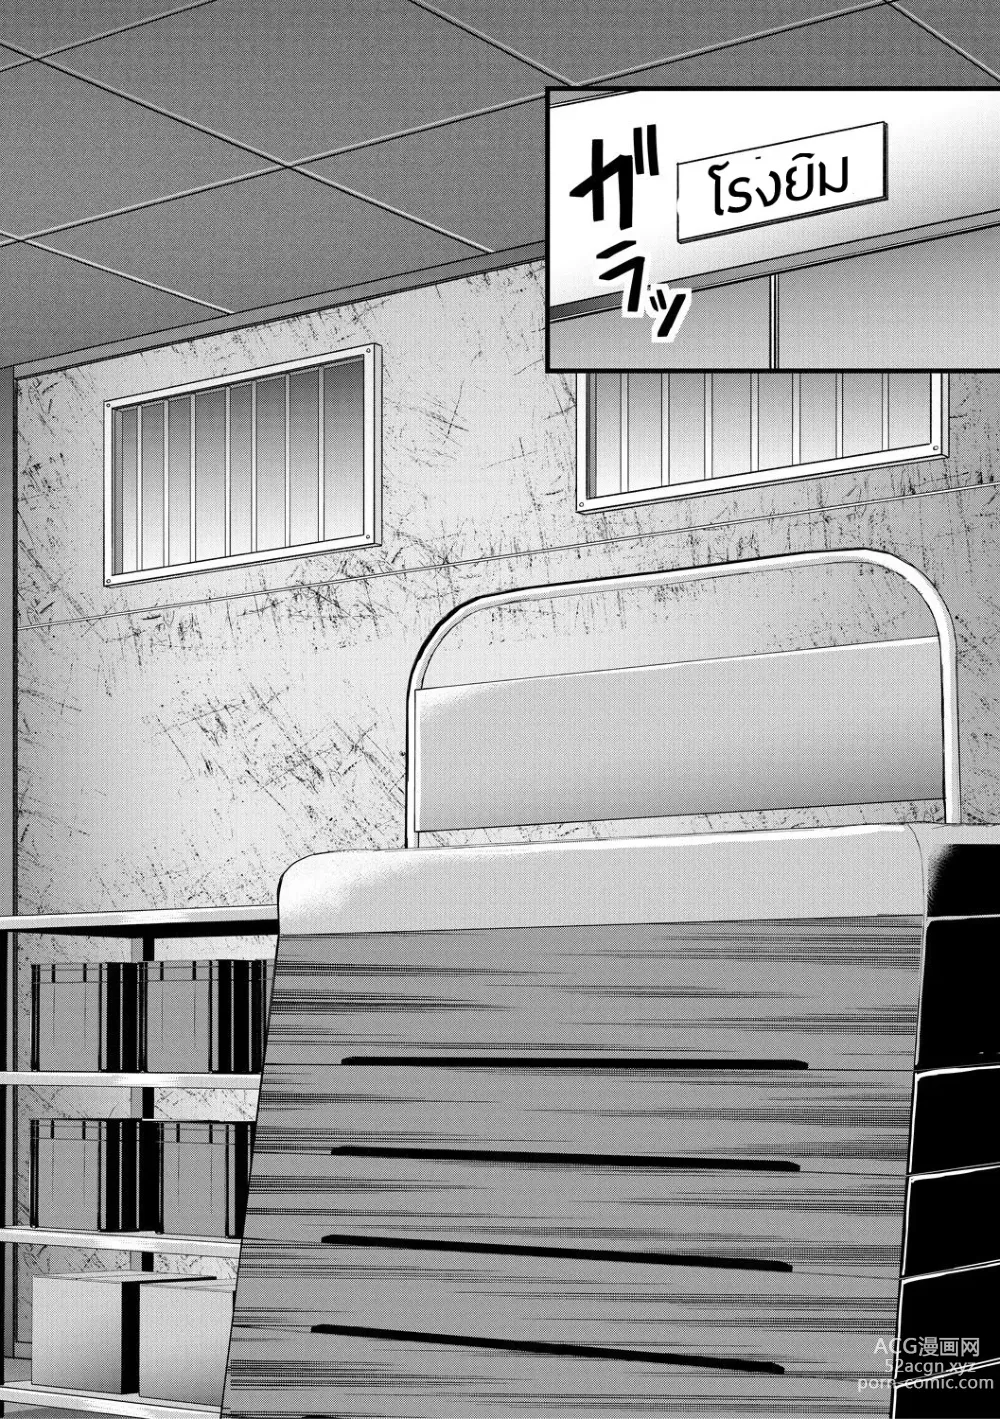 Page 14 of manga kakitsubata Kanae yoru onna ryushi wa han me rarenai 1